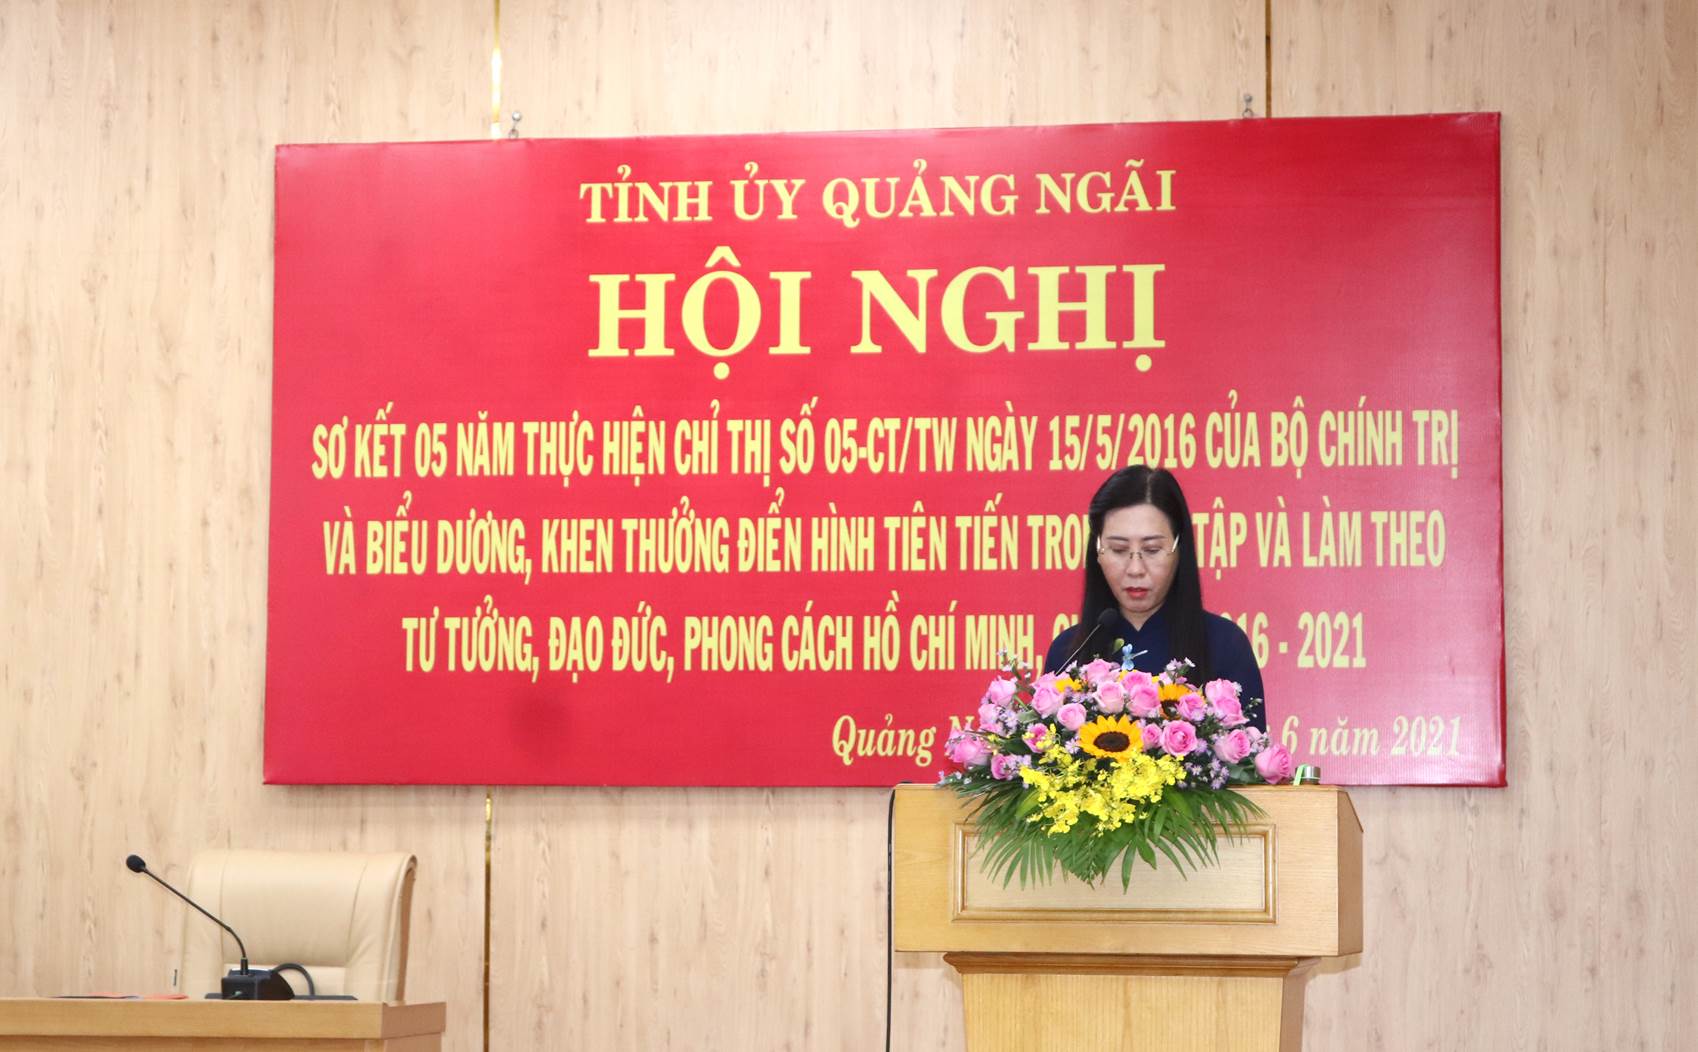 Đồng chí Bùi Thị Quỳnh Vân, Bí thư Tỉnh ủy Quảng Ngãi phát biểu tại Hội nghị.